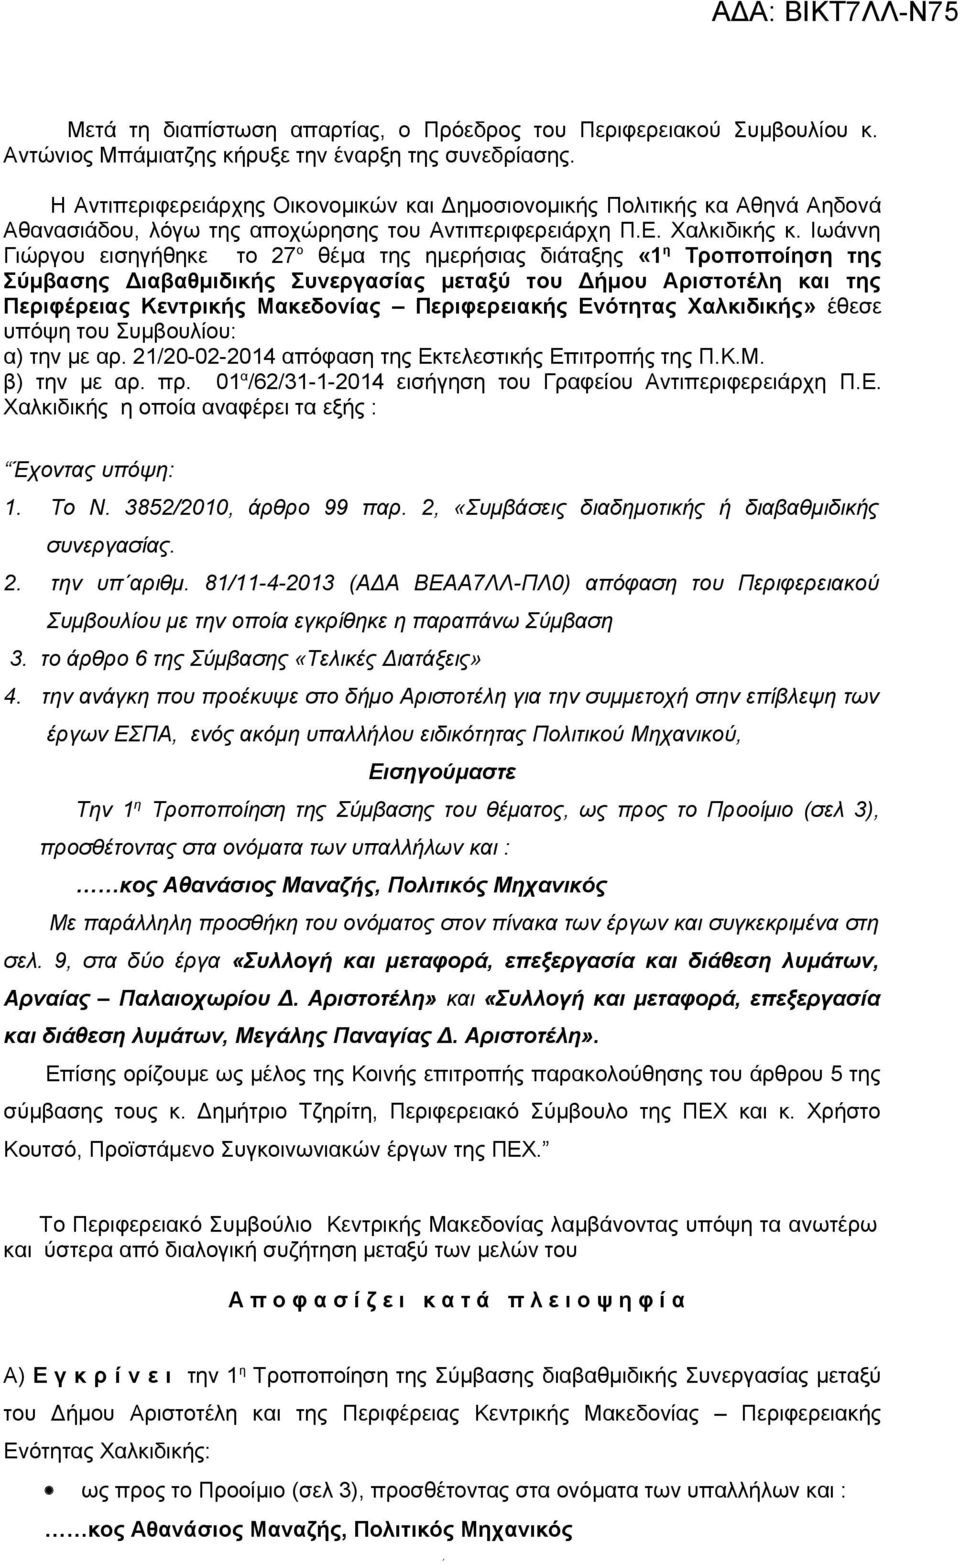 Ιωάννη Γιώργου εισηγήθηκε το 27 ο θέμα της ημερήσιας διάταξης «η Τροποποίηση της Σύμβασης Διαβαθμιδικής Συνεργασίας μεταξύ του Δήμου Αριστοτέλη και της Περιφέρειας Κεντρικής Μακεδονίας Περιφερειακής